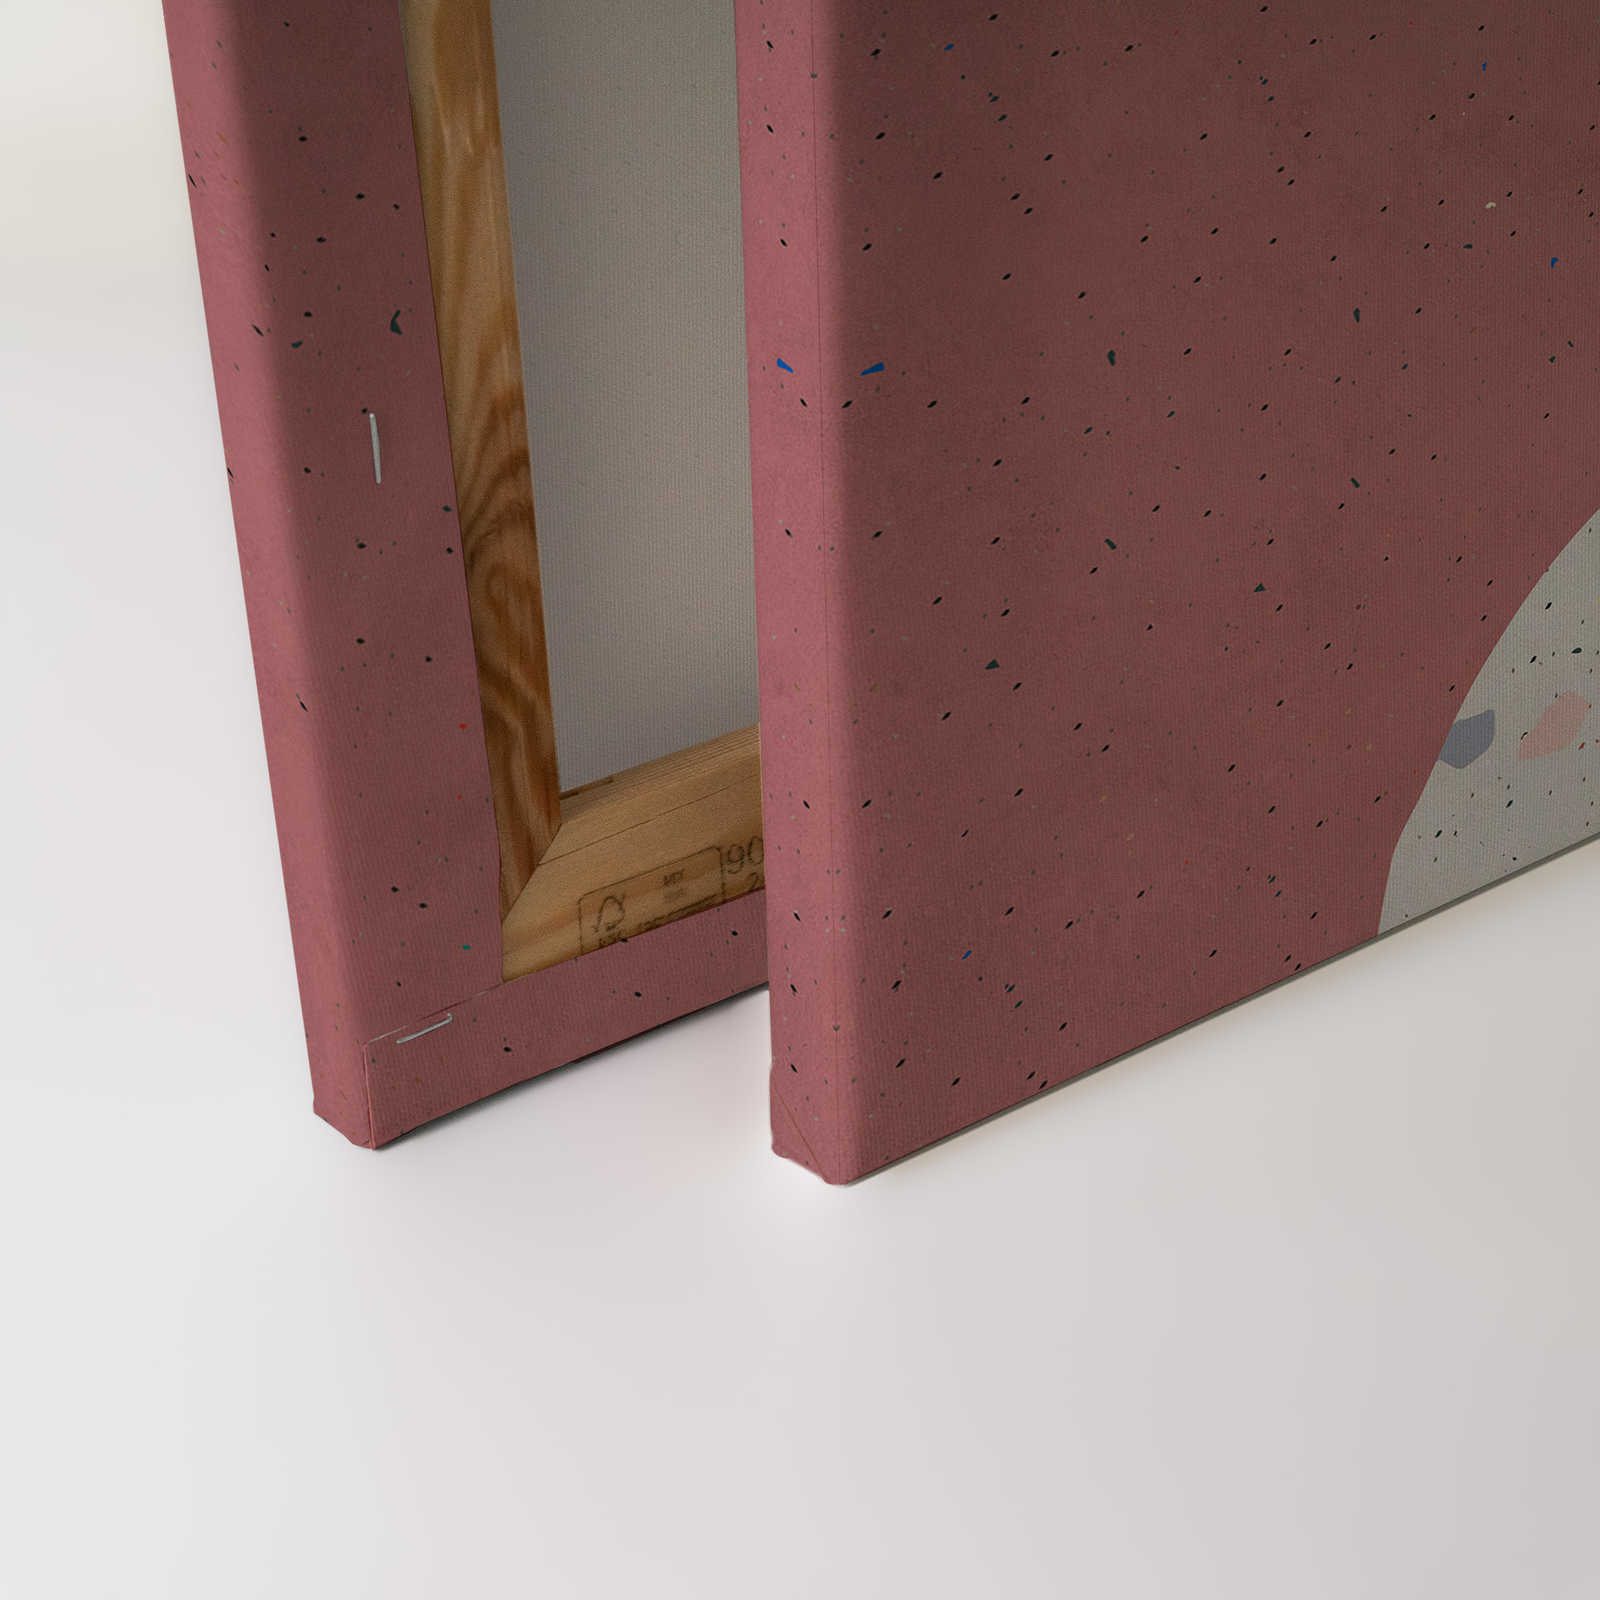             Terrazzo 5 - Pittura su tela con struttura in carta assorbente, collage di terrazzo - 0,90 m x 0,60 m
        